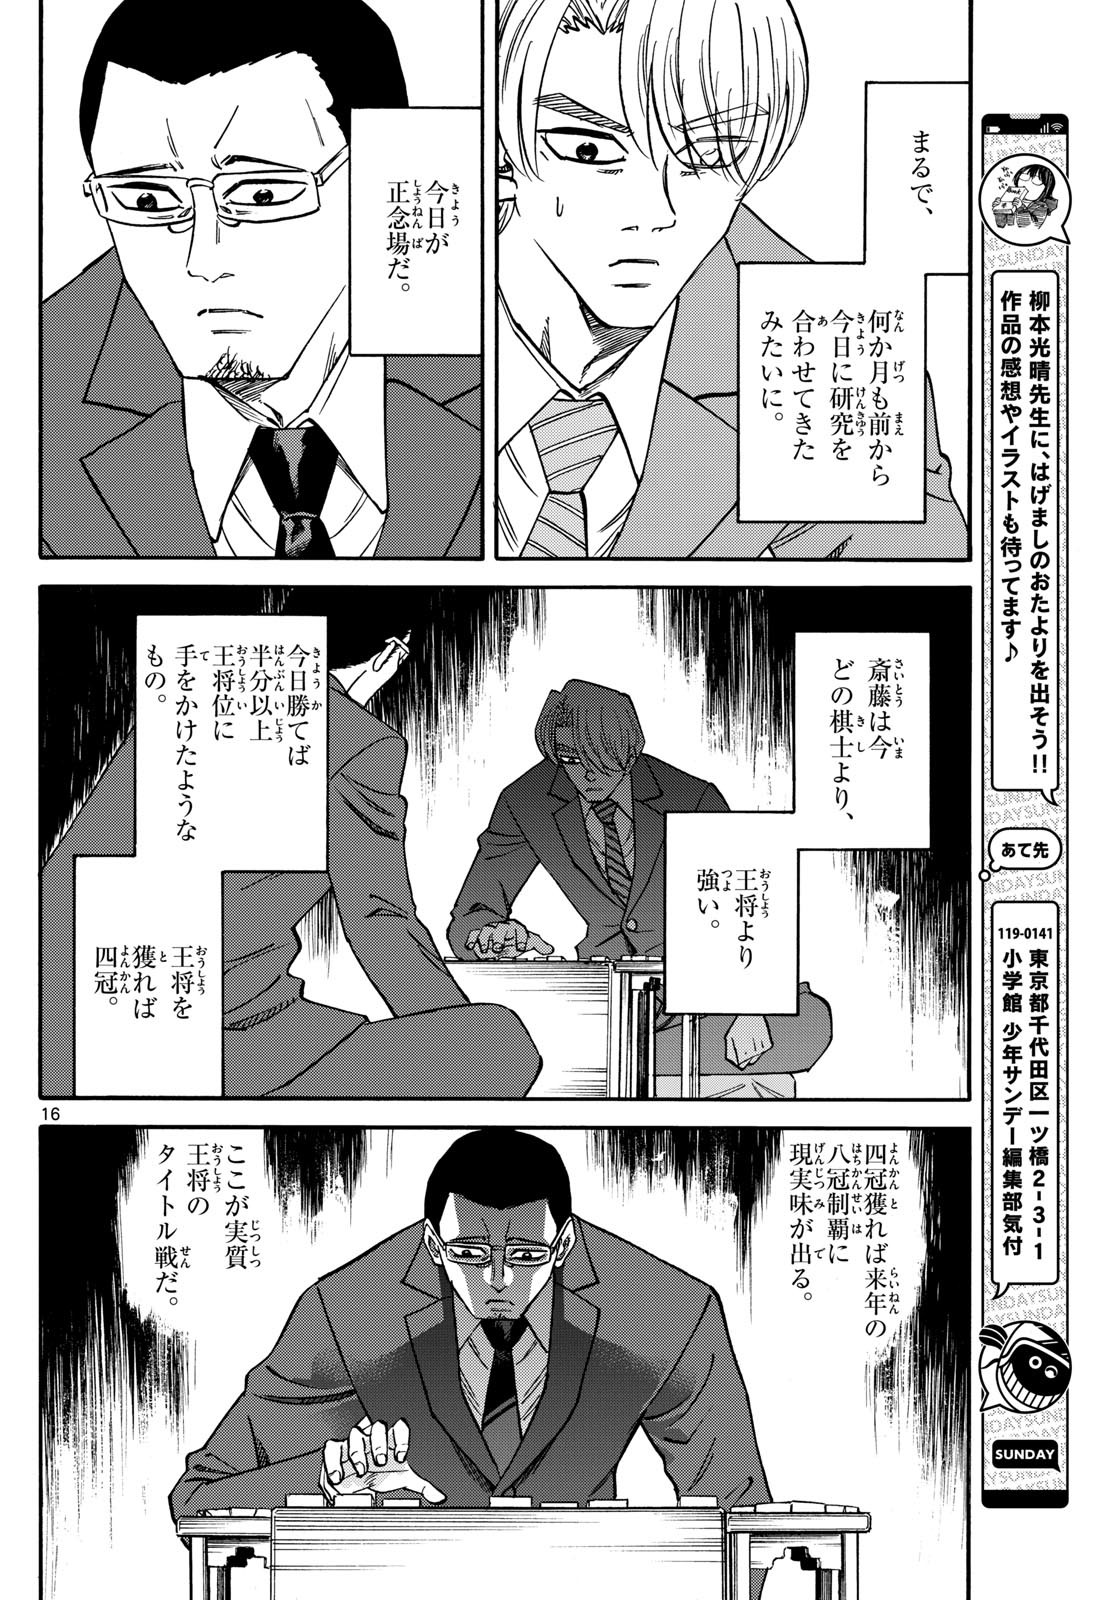 Ryu-to-Ichigo - Chapter 167 - Page 16